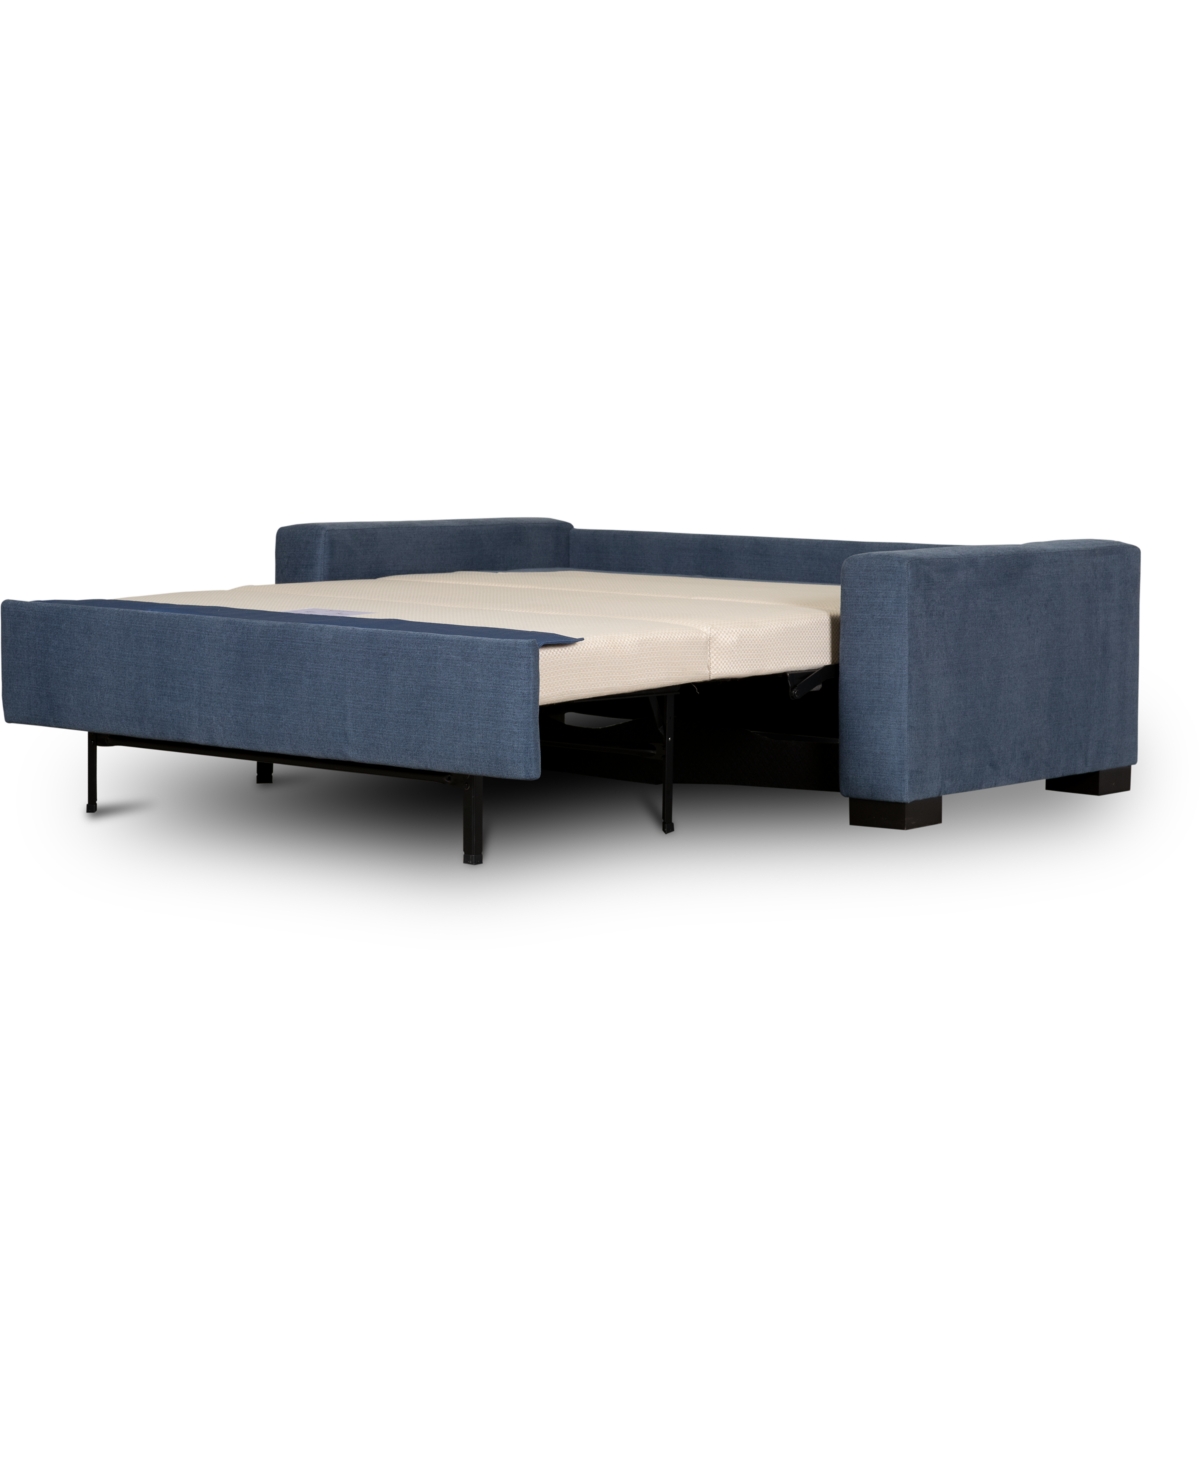 Alaina Ii 77 Fabric Queen Sleeper Sofa Bed, Created for Macys